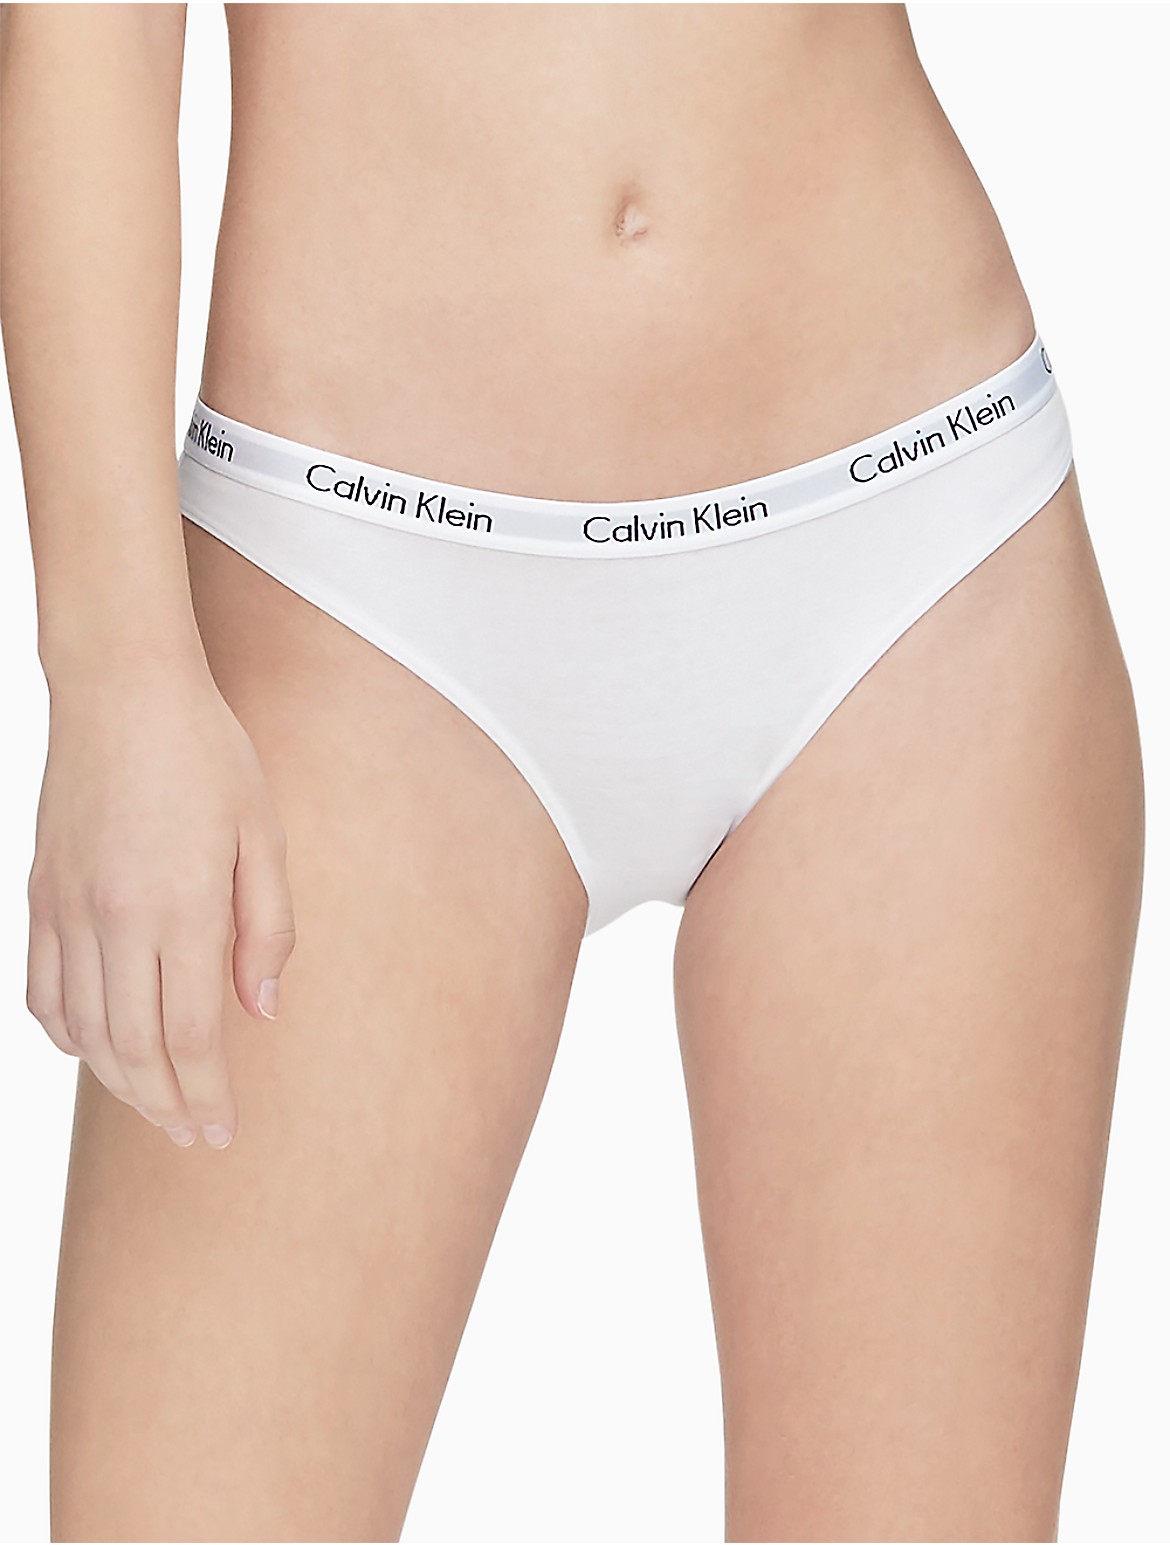 Calvin Klein Women's Carousel Logo Cotton Bikini Bottom - White - XS